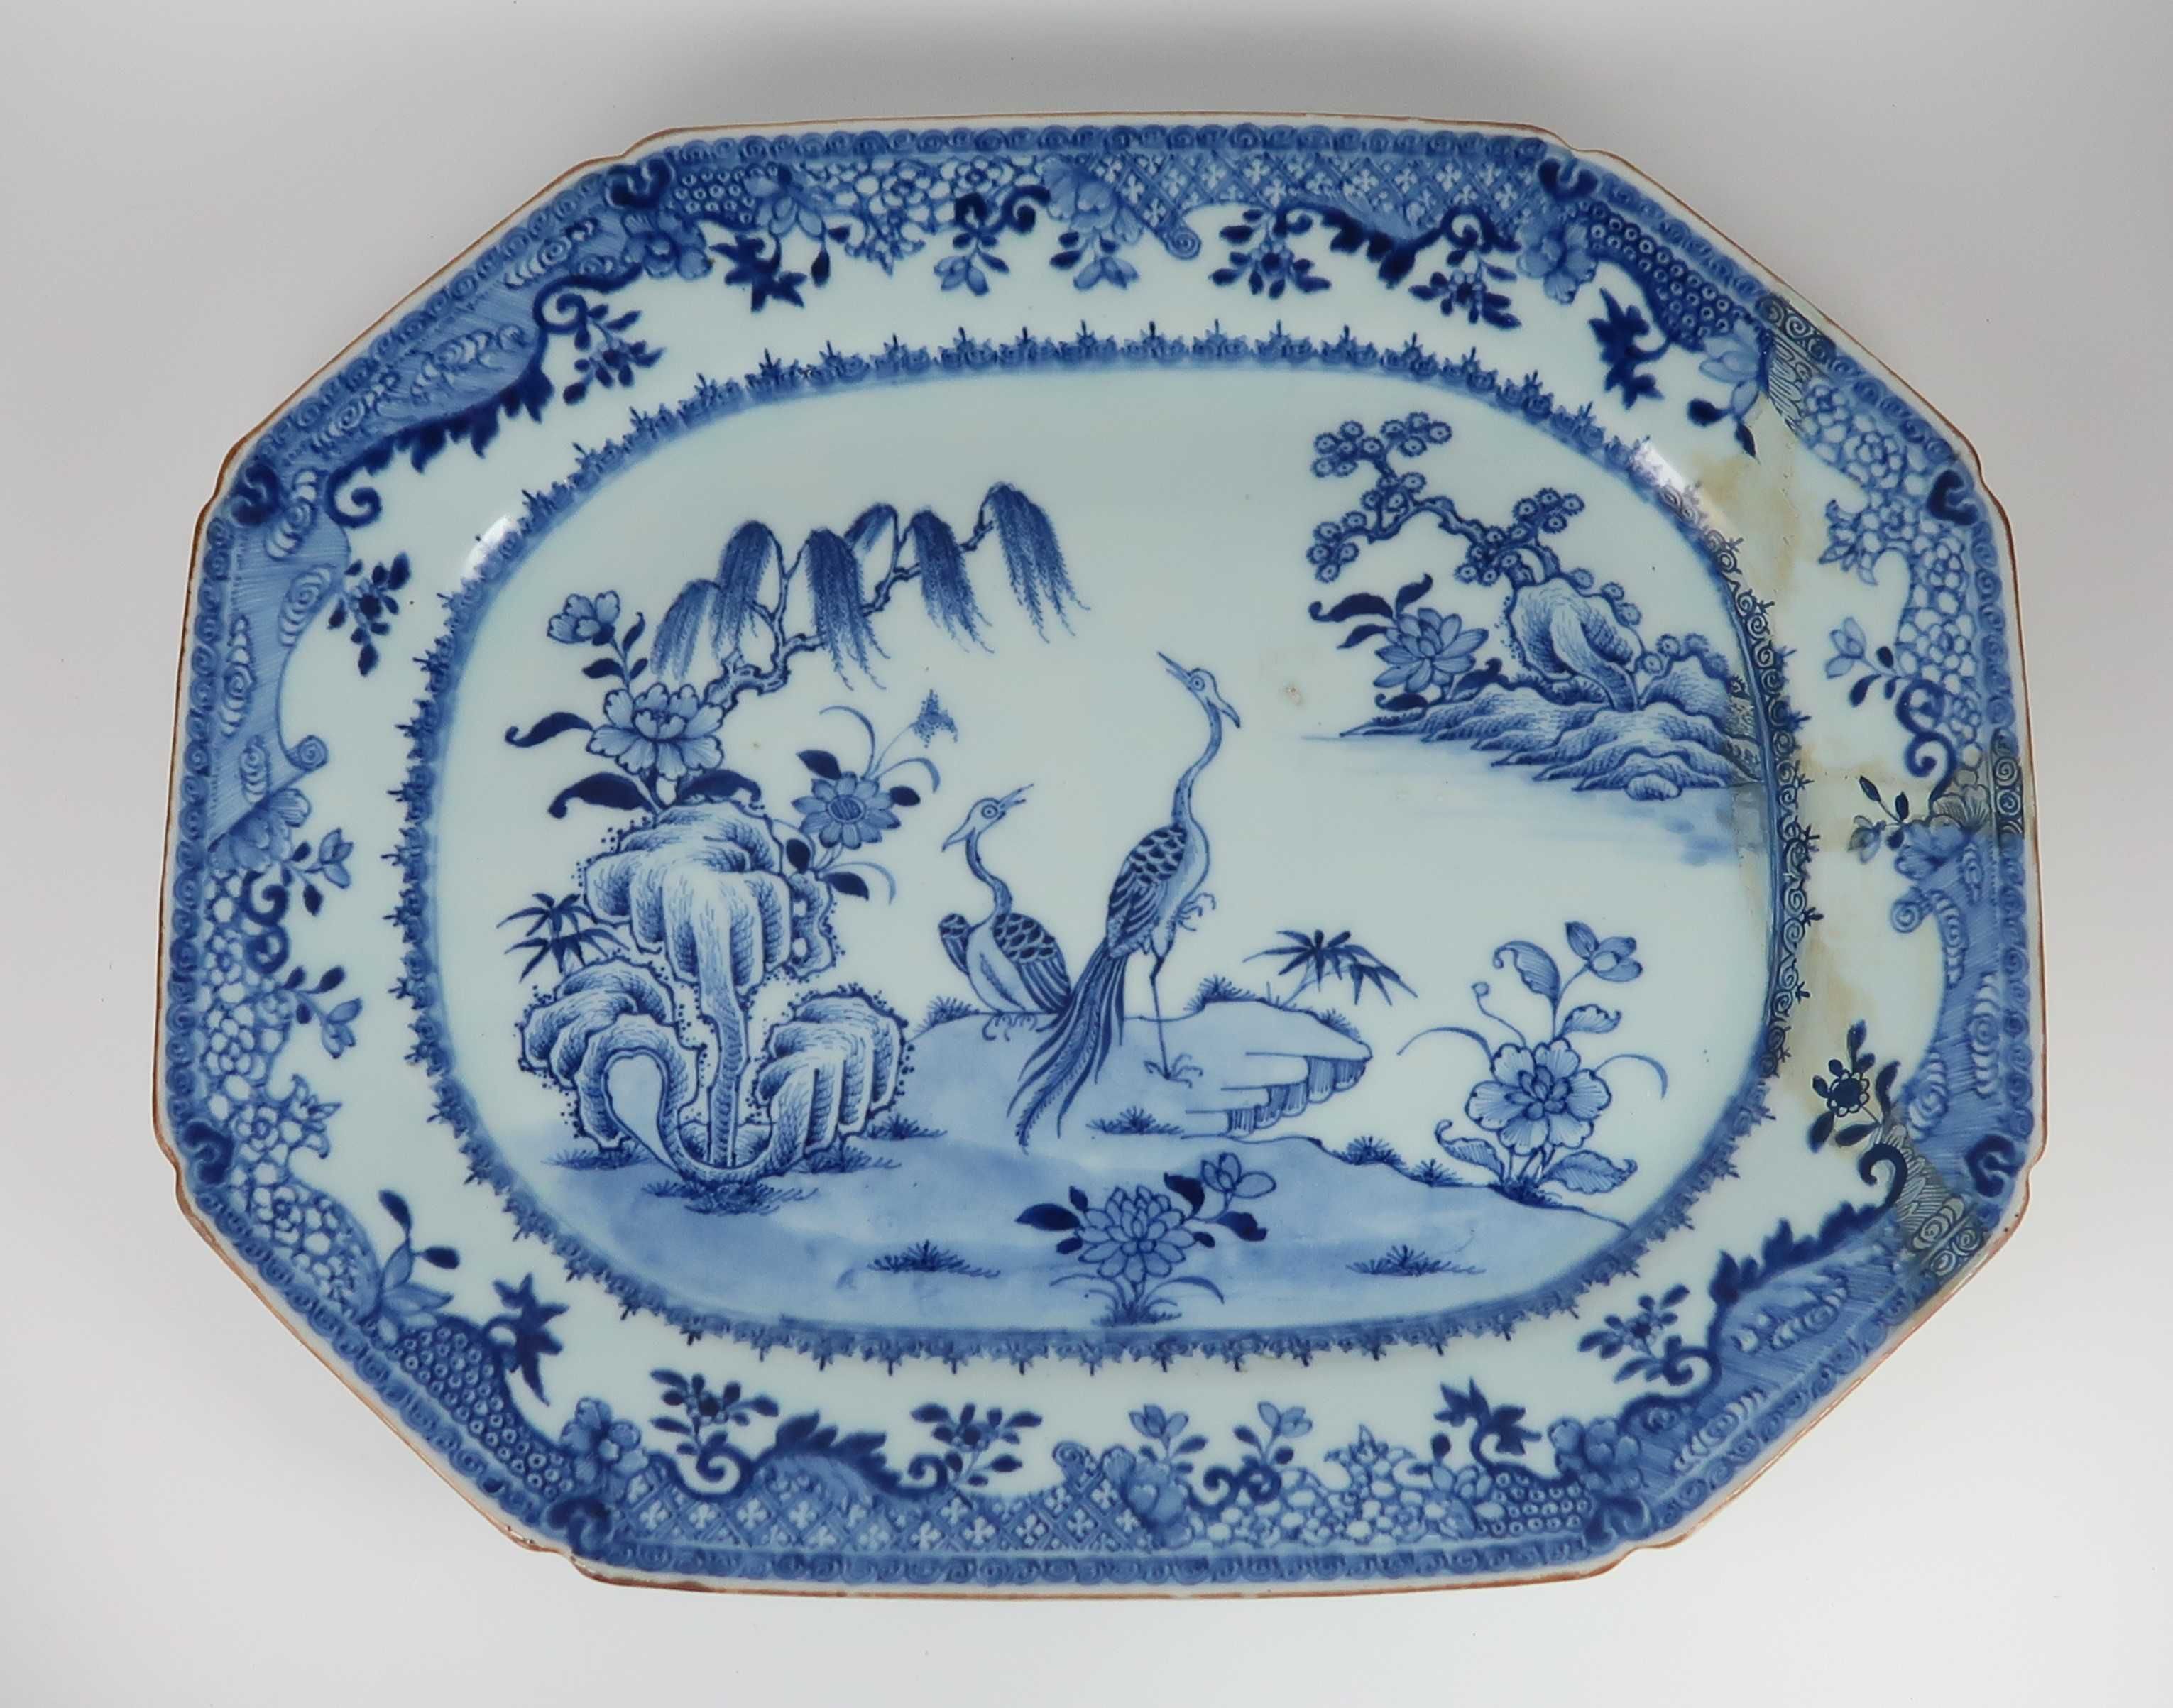 Grande travessa porcelana da China - Companhia da Índias Séc. XVIII